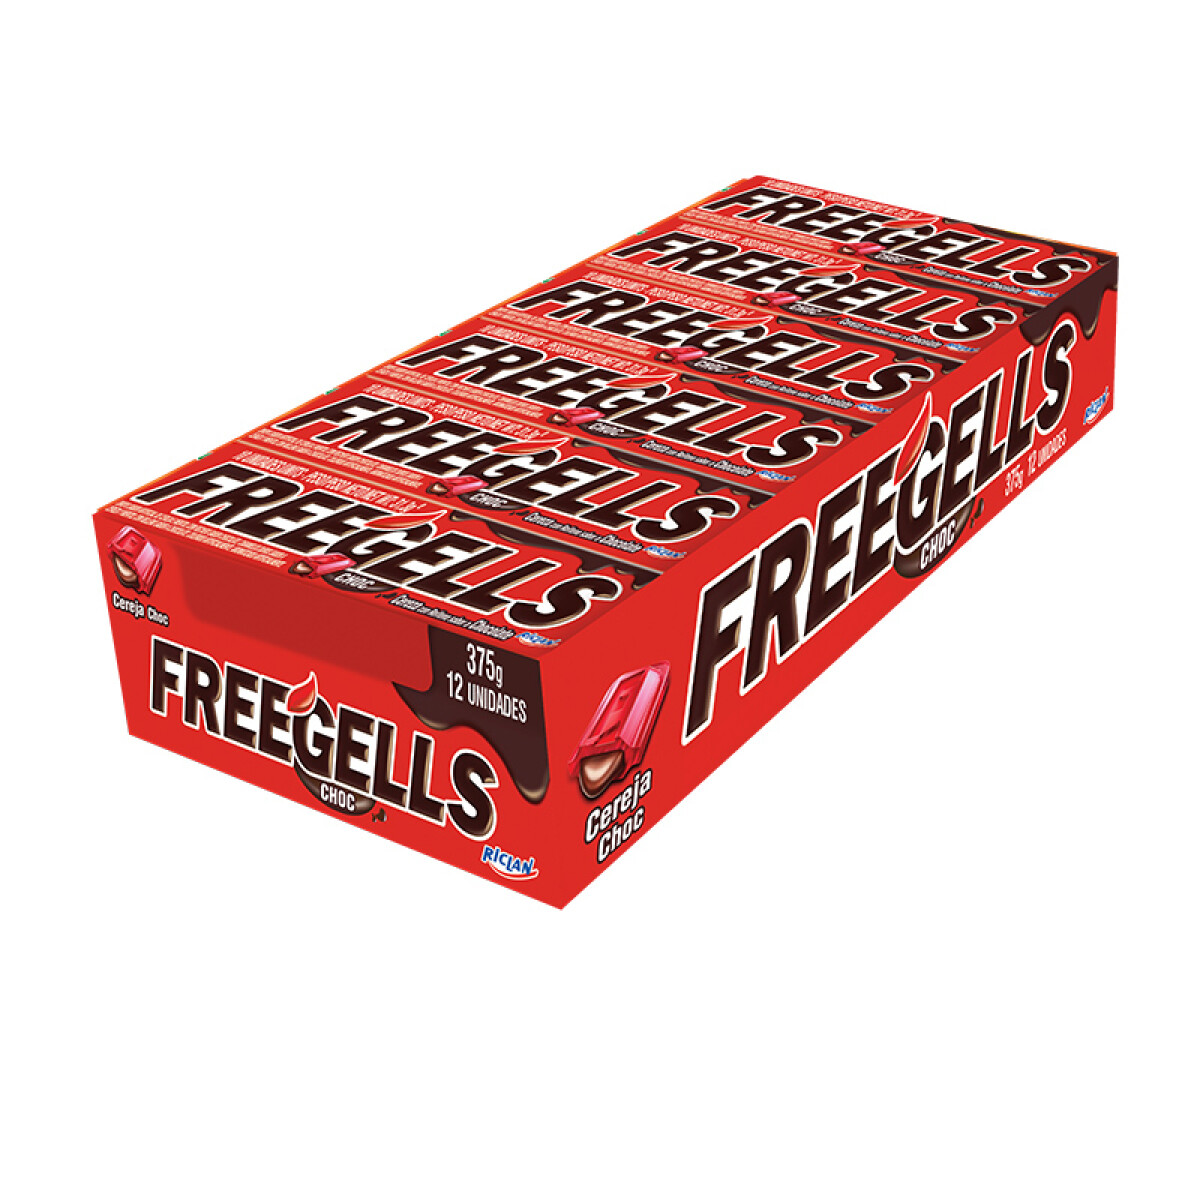 Pastillas FREEGELLS x12 Unidades - Cereza con Chocolate 